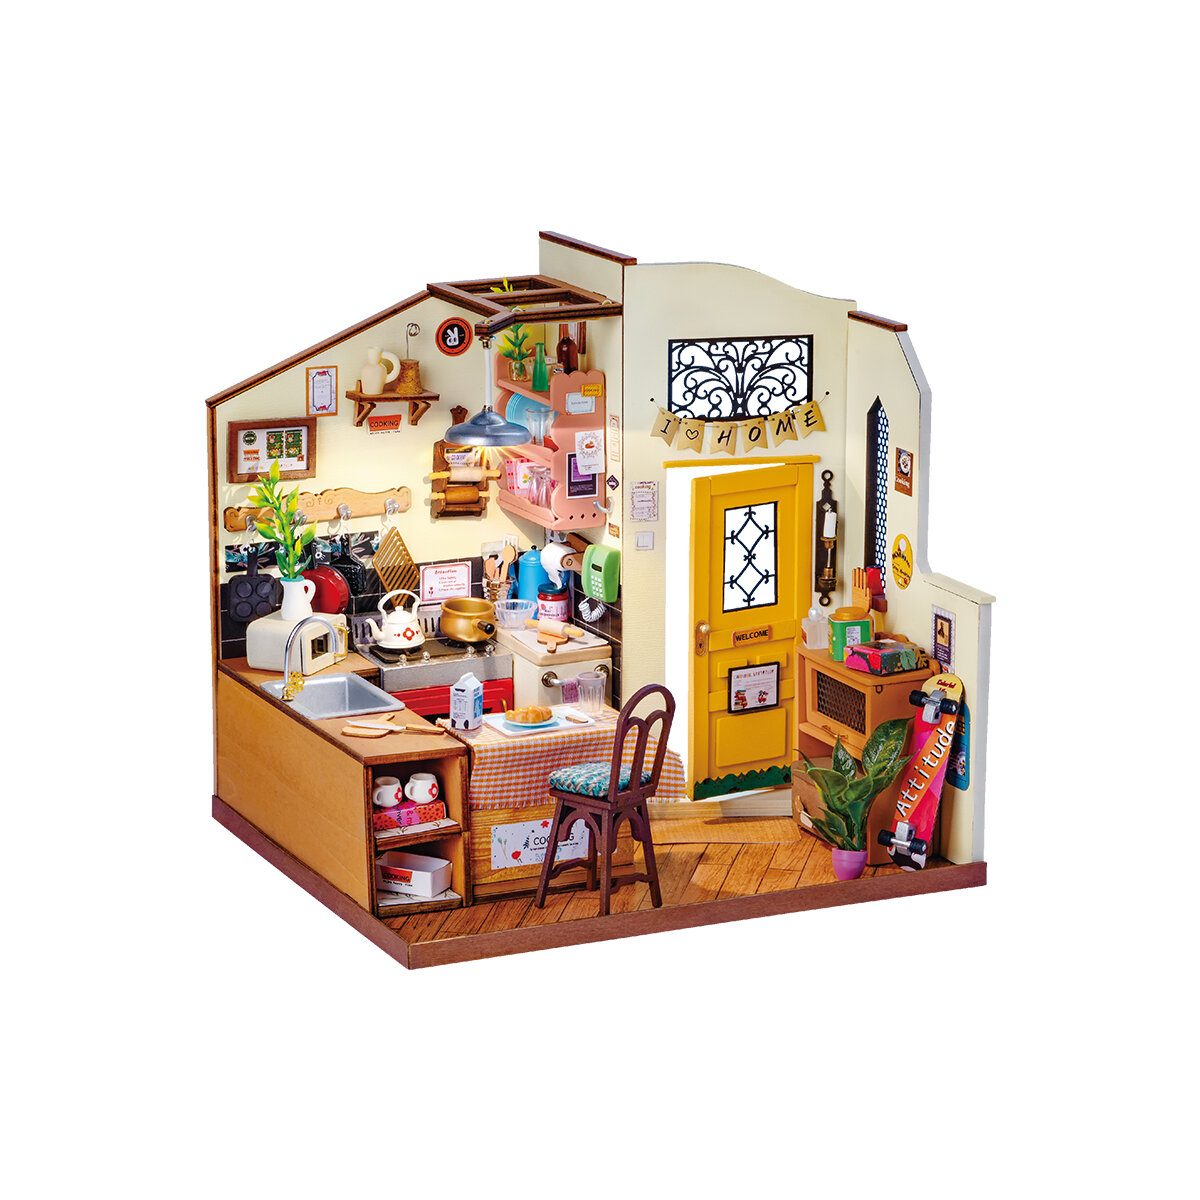 Miniature house - Cozy kitchen Rolife DG159